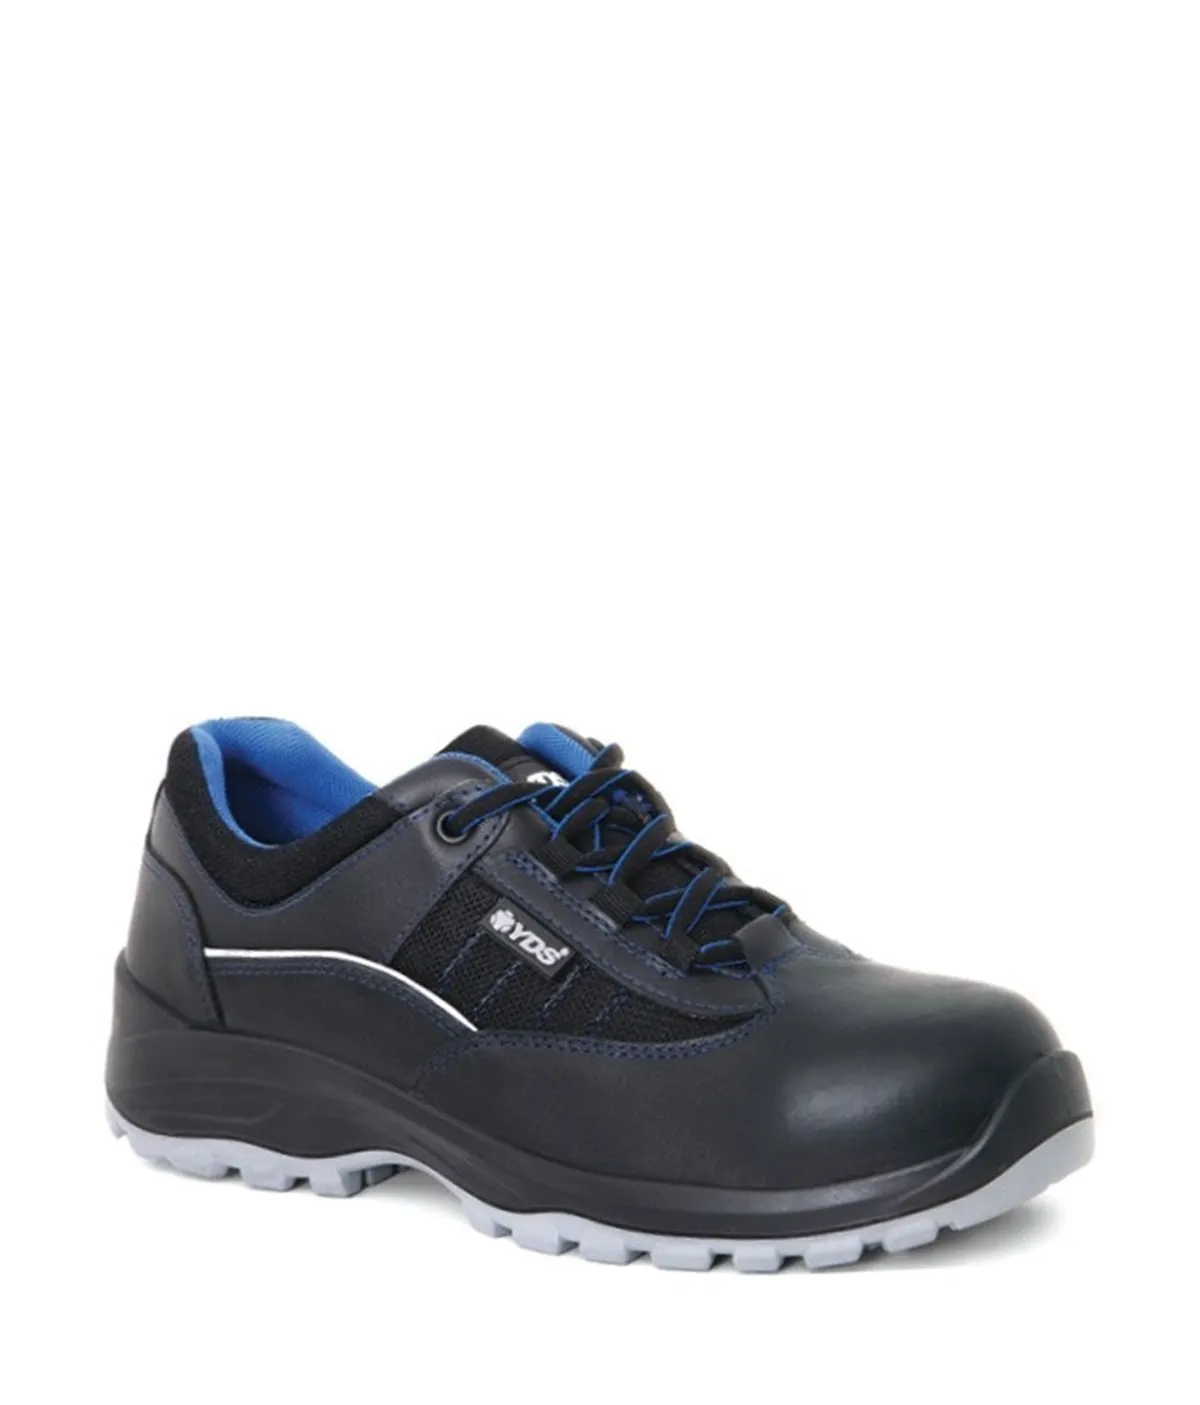 zapatos-de-seguridad-zapatos-de-trabajo-zapatos-de-seguridad-src-zapatos-antideslizantes-zapatos-resistentes-punta-de-acero-ropa-de-seguridad